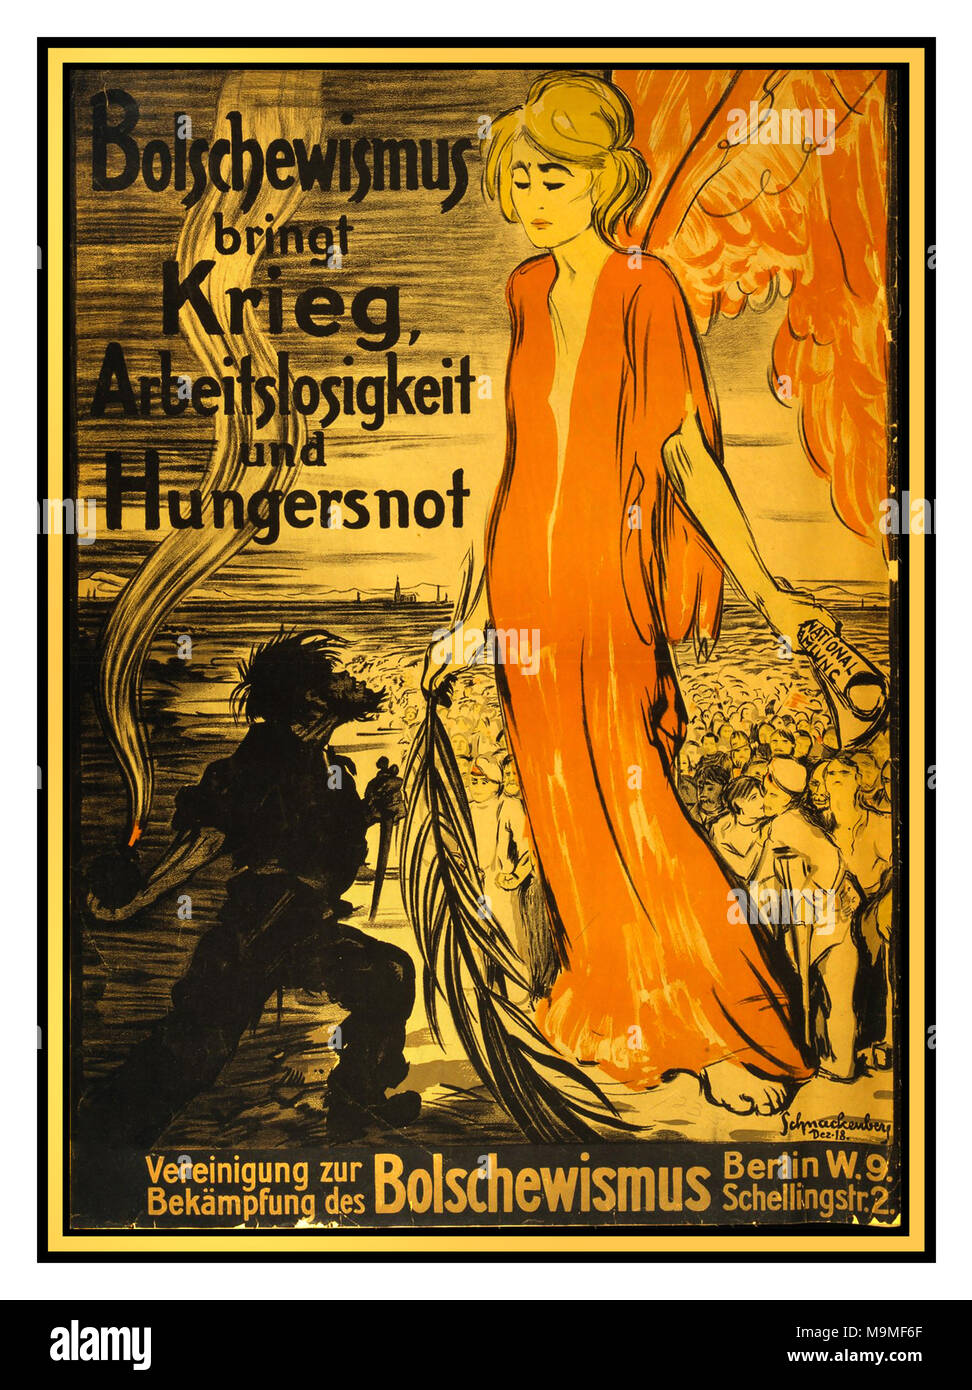 Die Vintage WW1 1920 Deutschland Propaganda anti-russisch-sowjetischen Plakat "Bolschewismus bringt Krieg, Arbeitslosigkeit und Hunger"... Gründe für den Kampf gegen den Bolschewismus Stockfoto